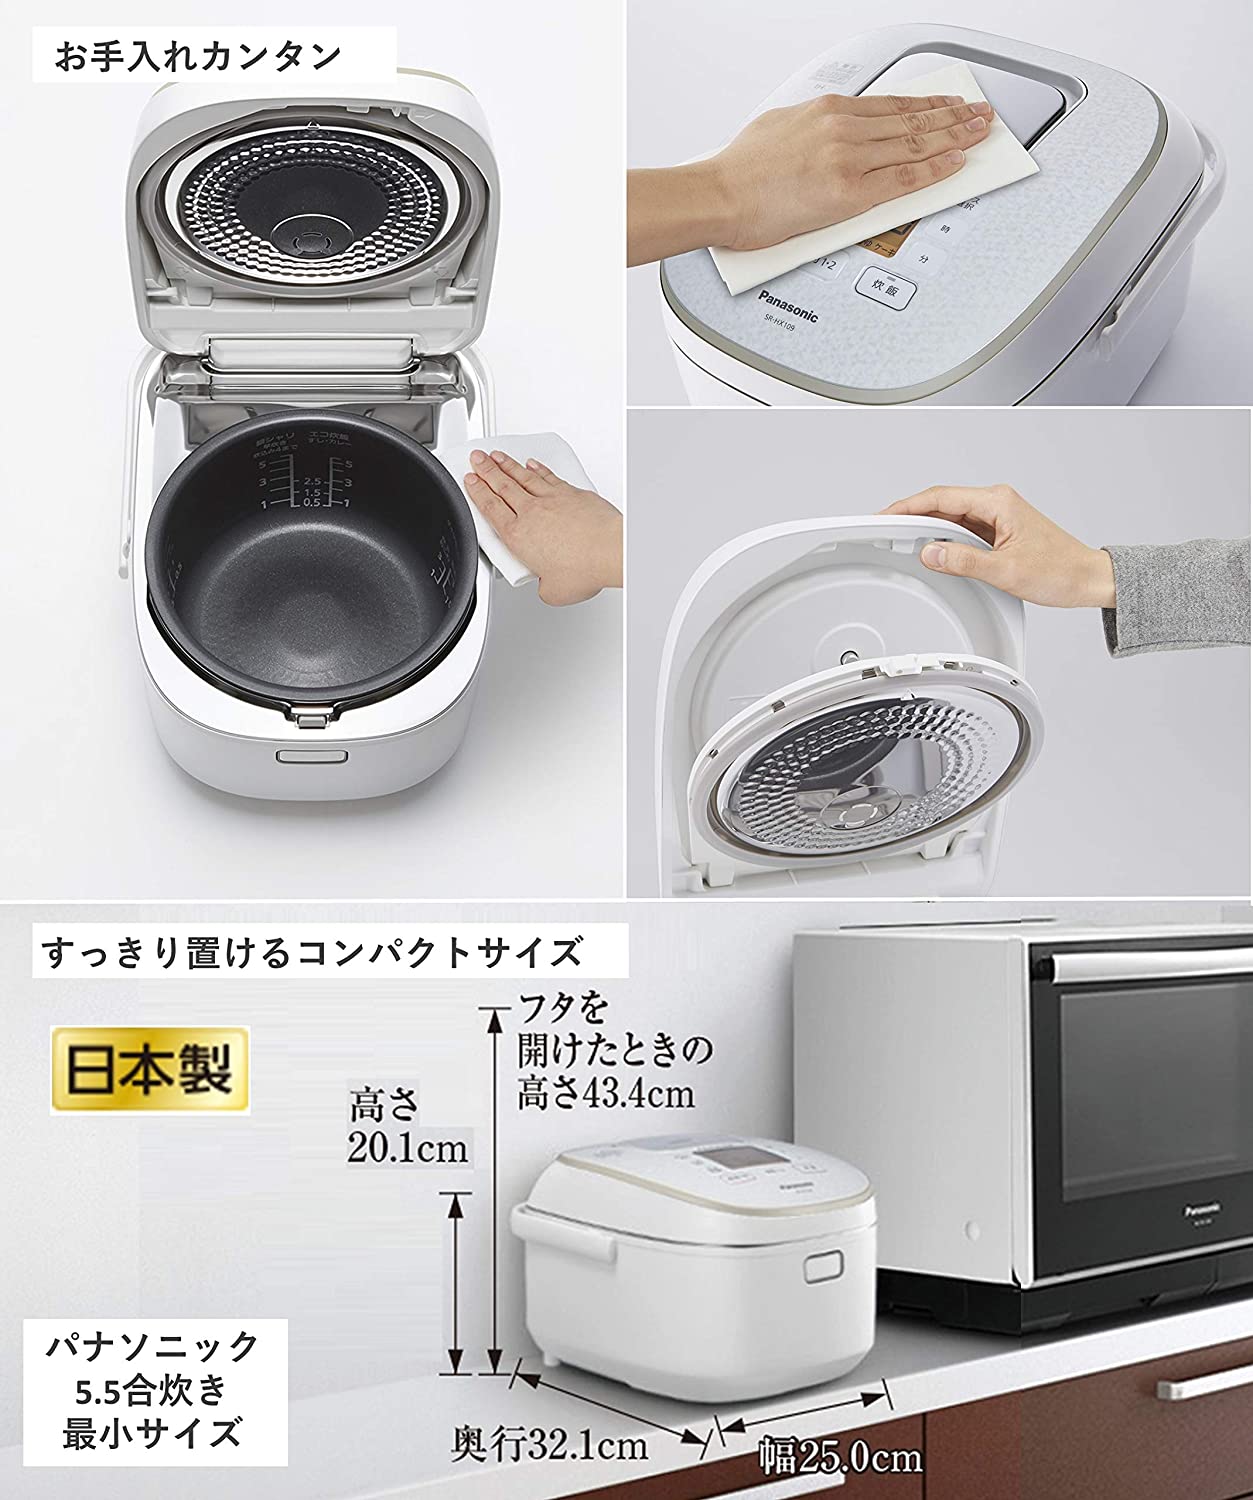 安い購入 2020年製 【高年式】Panasonic☆5.5合炊きIHジャー炊飯器 